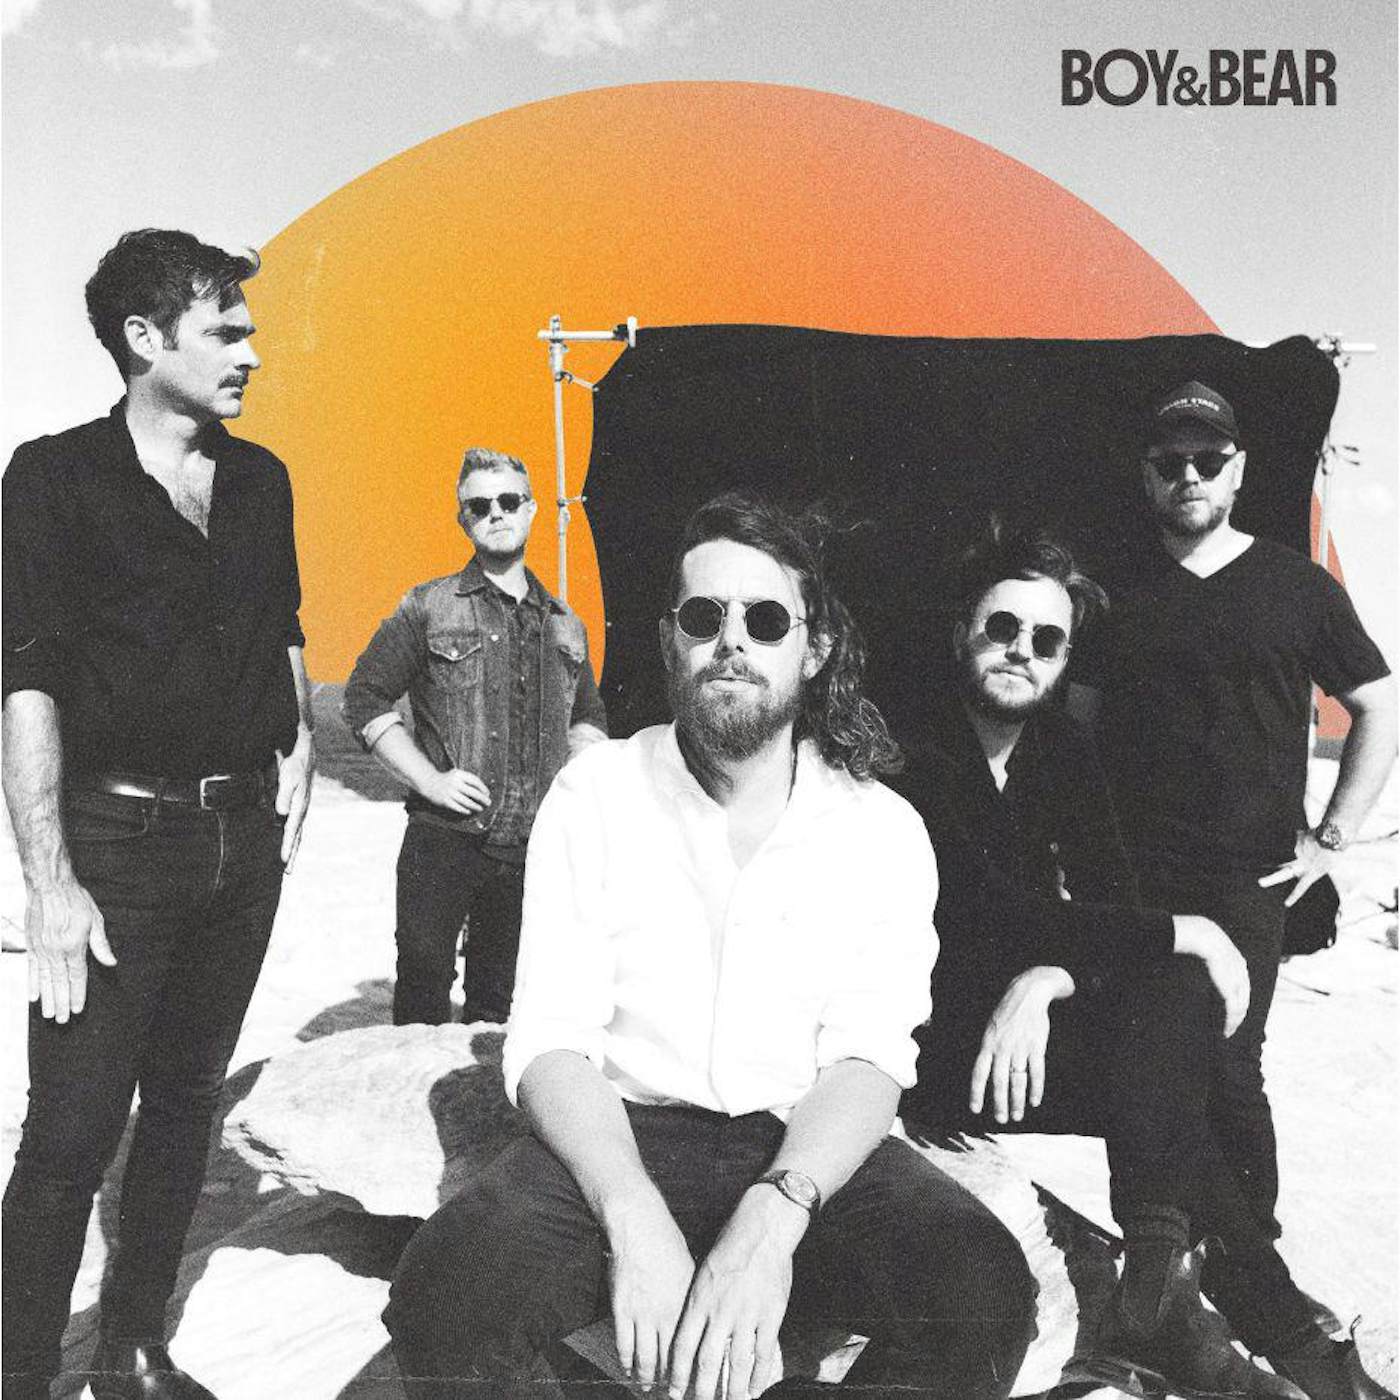  Boy & Bear S/T Vinyl Record